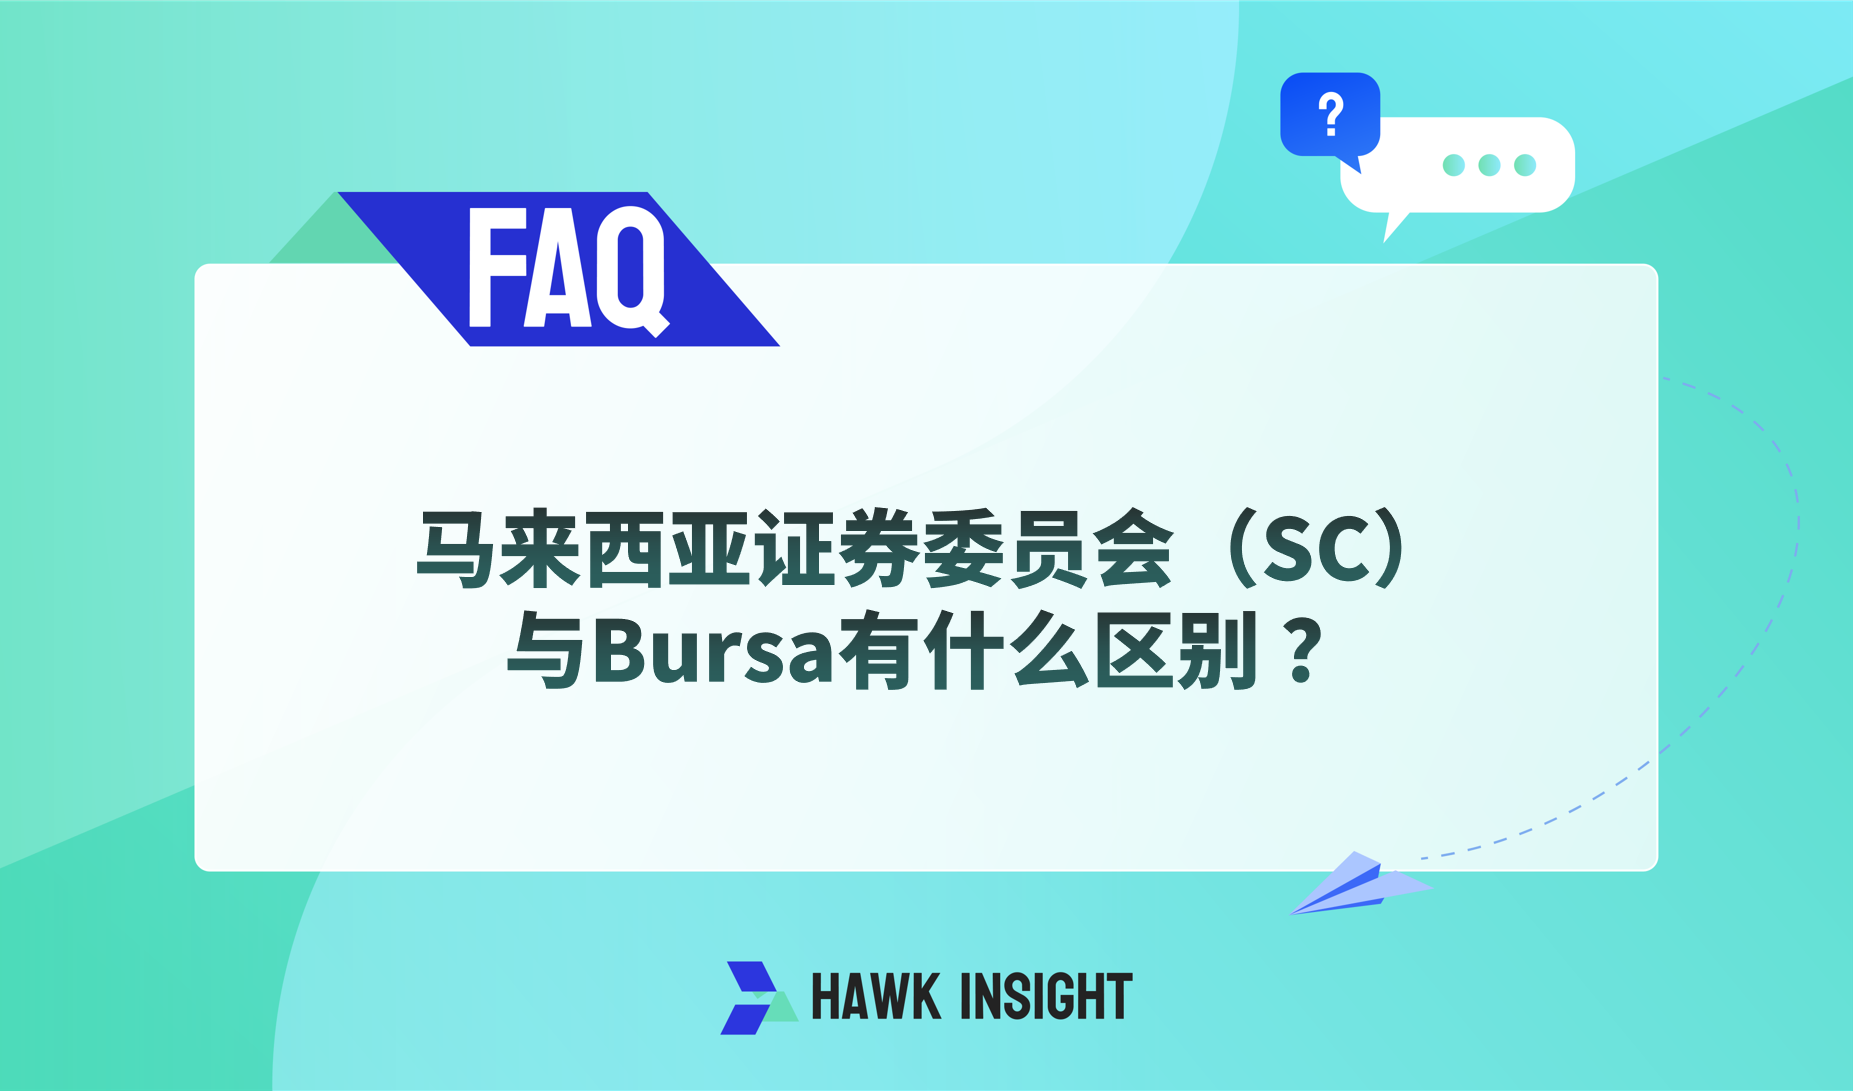 马来西亚证券委员会（SC）与Bursa有什么区别？